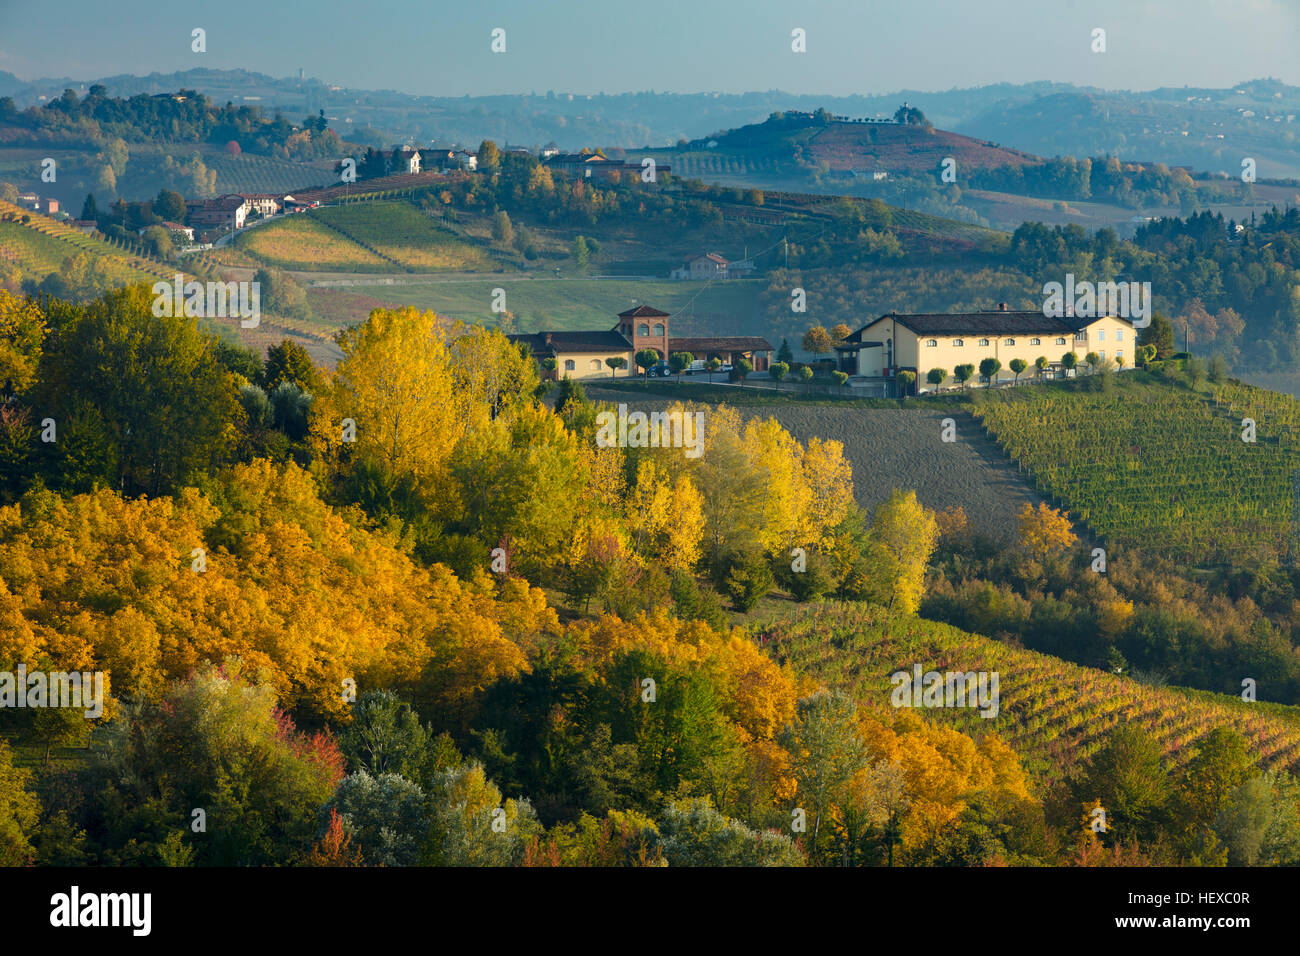 Couleur d'automne dans la vallée au-dessous de Monforte d'Alba, Piemonte, Italie Banque D'Images